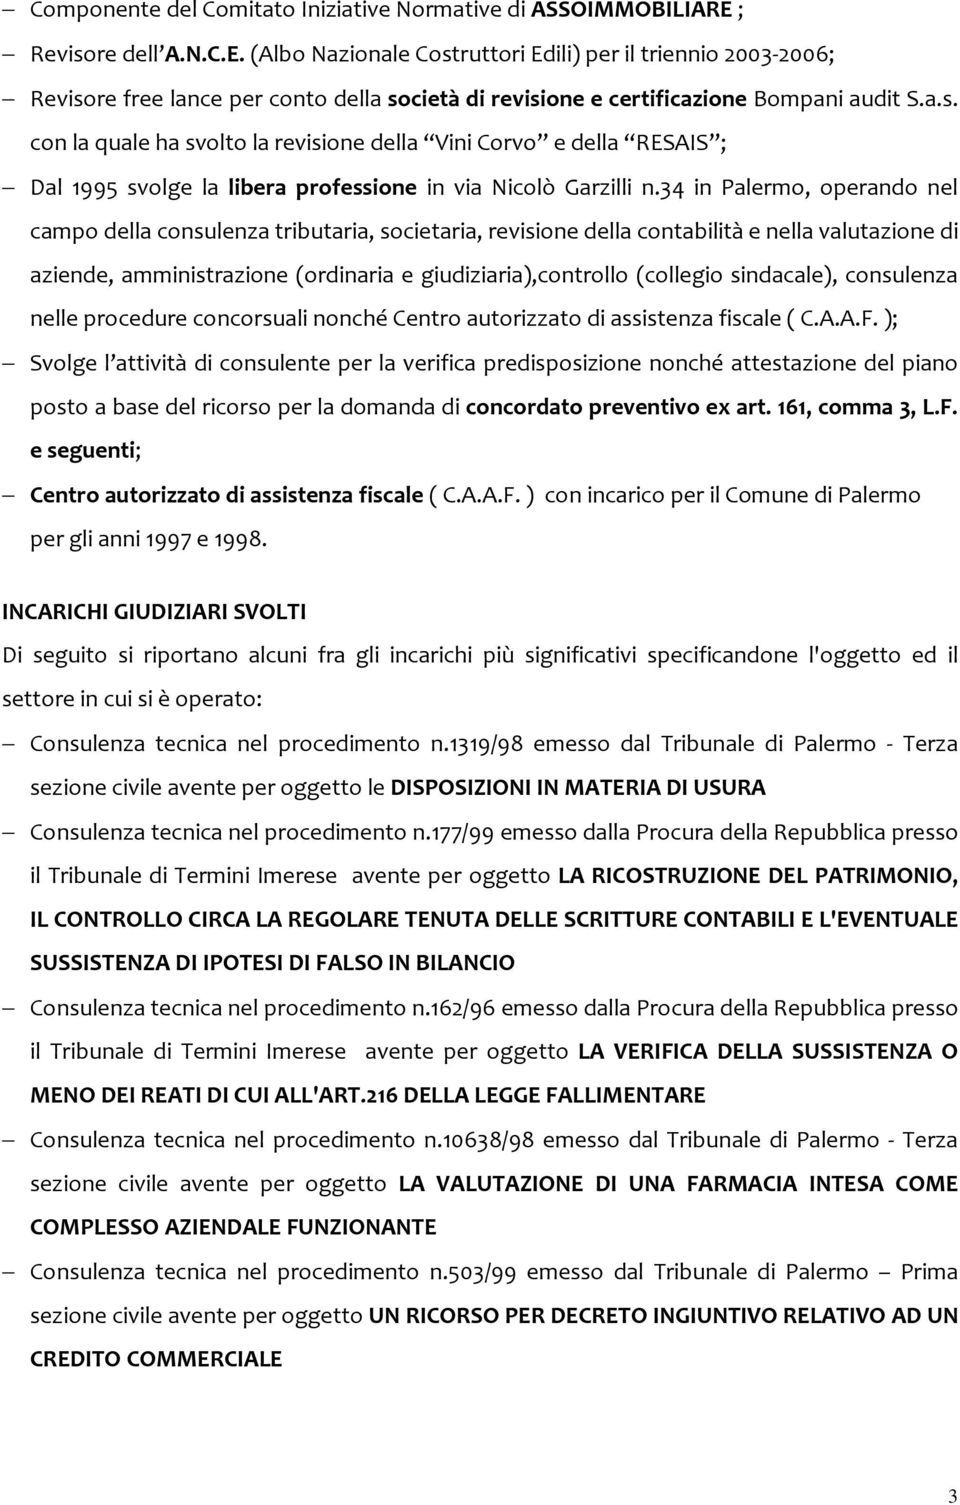 34 in Palermo, operando nel campo della consulenza tributaria, societaria, revisione della contabilità e nella valutazione di aziende, amministrazione (ordinaria e giudiziaria),controllo (collegio